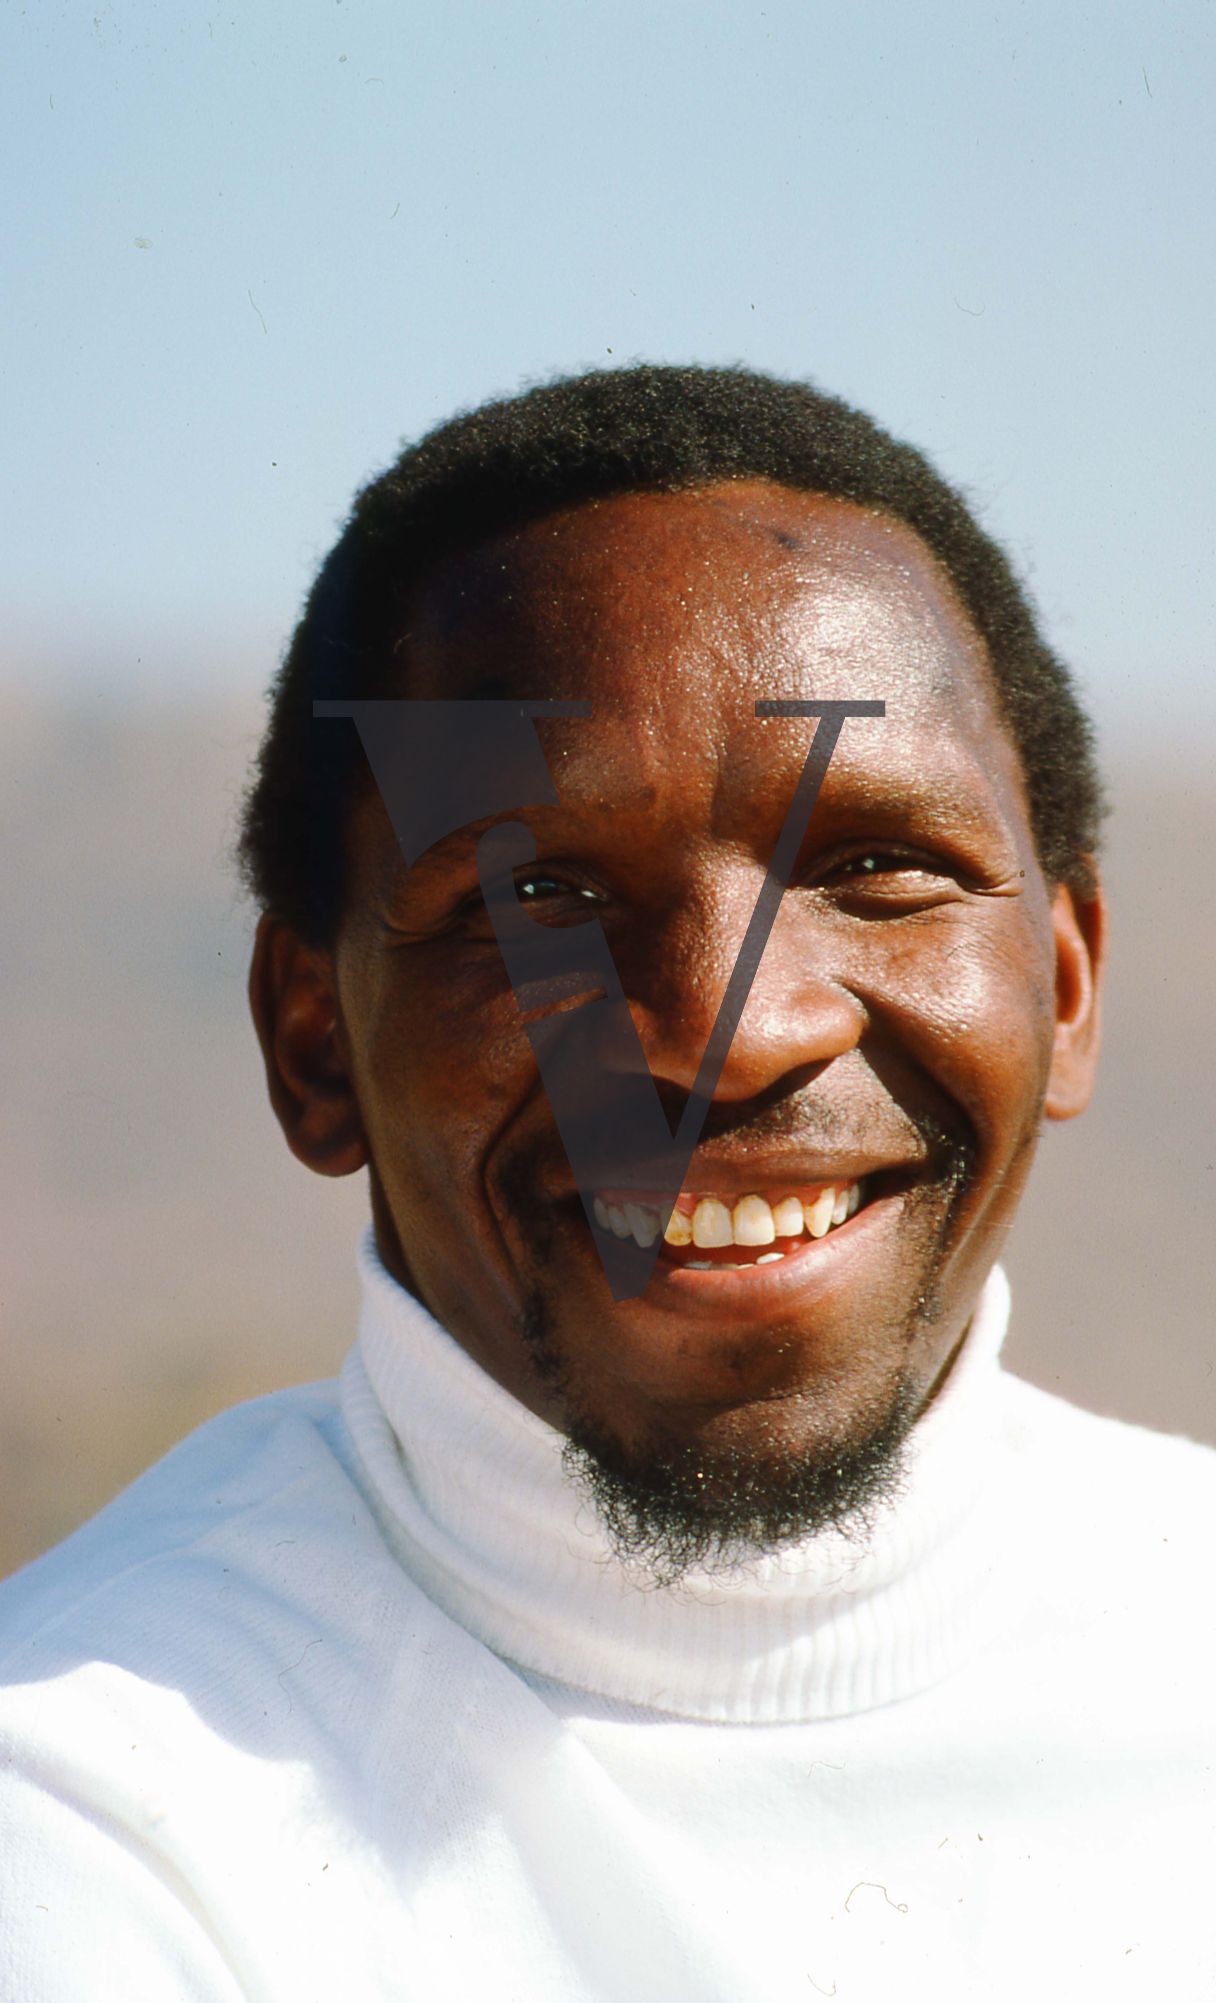 Lesotho, Political prisoner, unnamed, smiling, portrait.